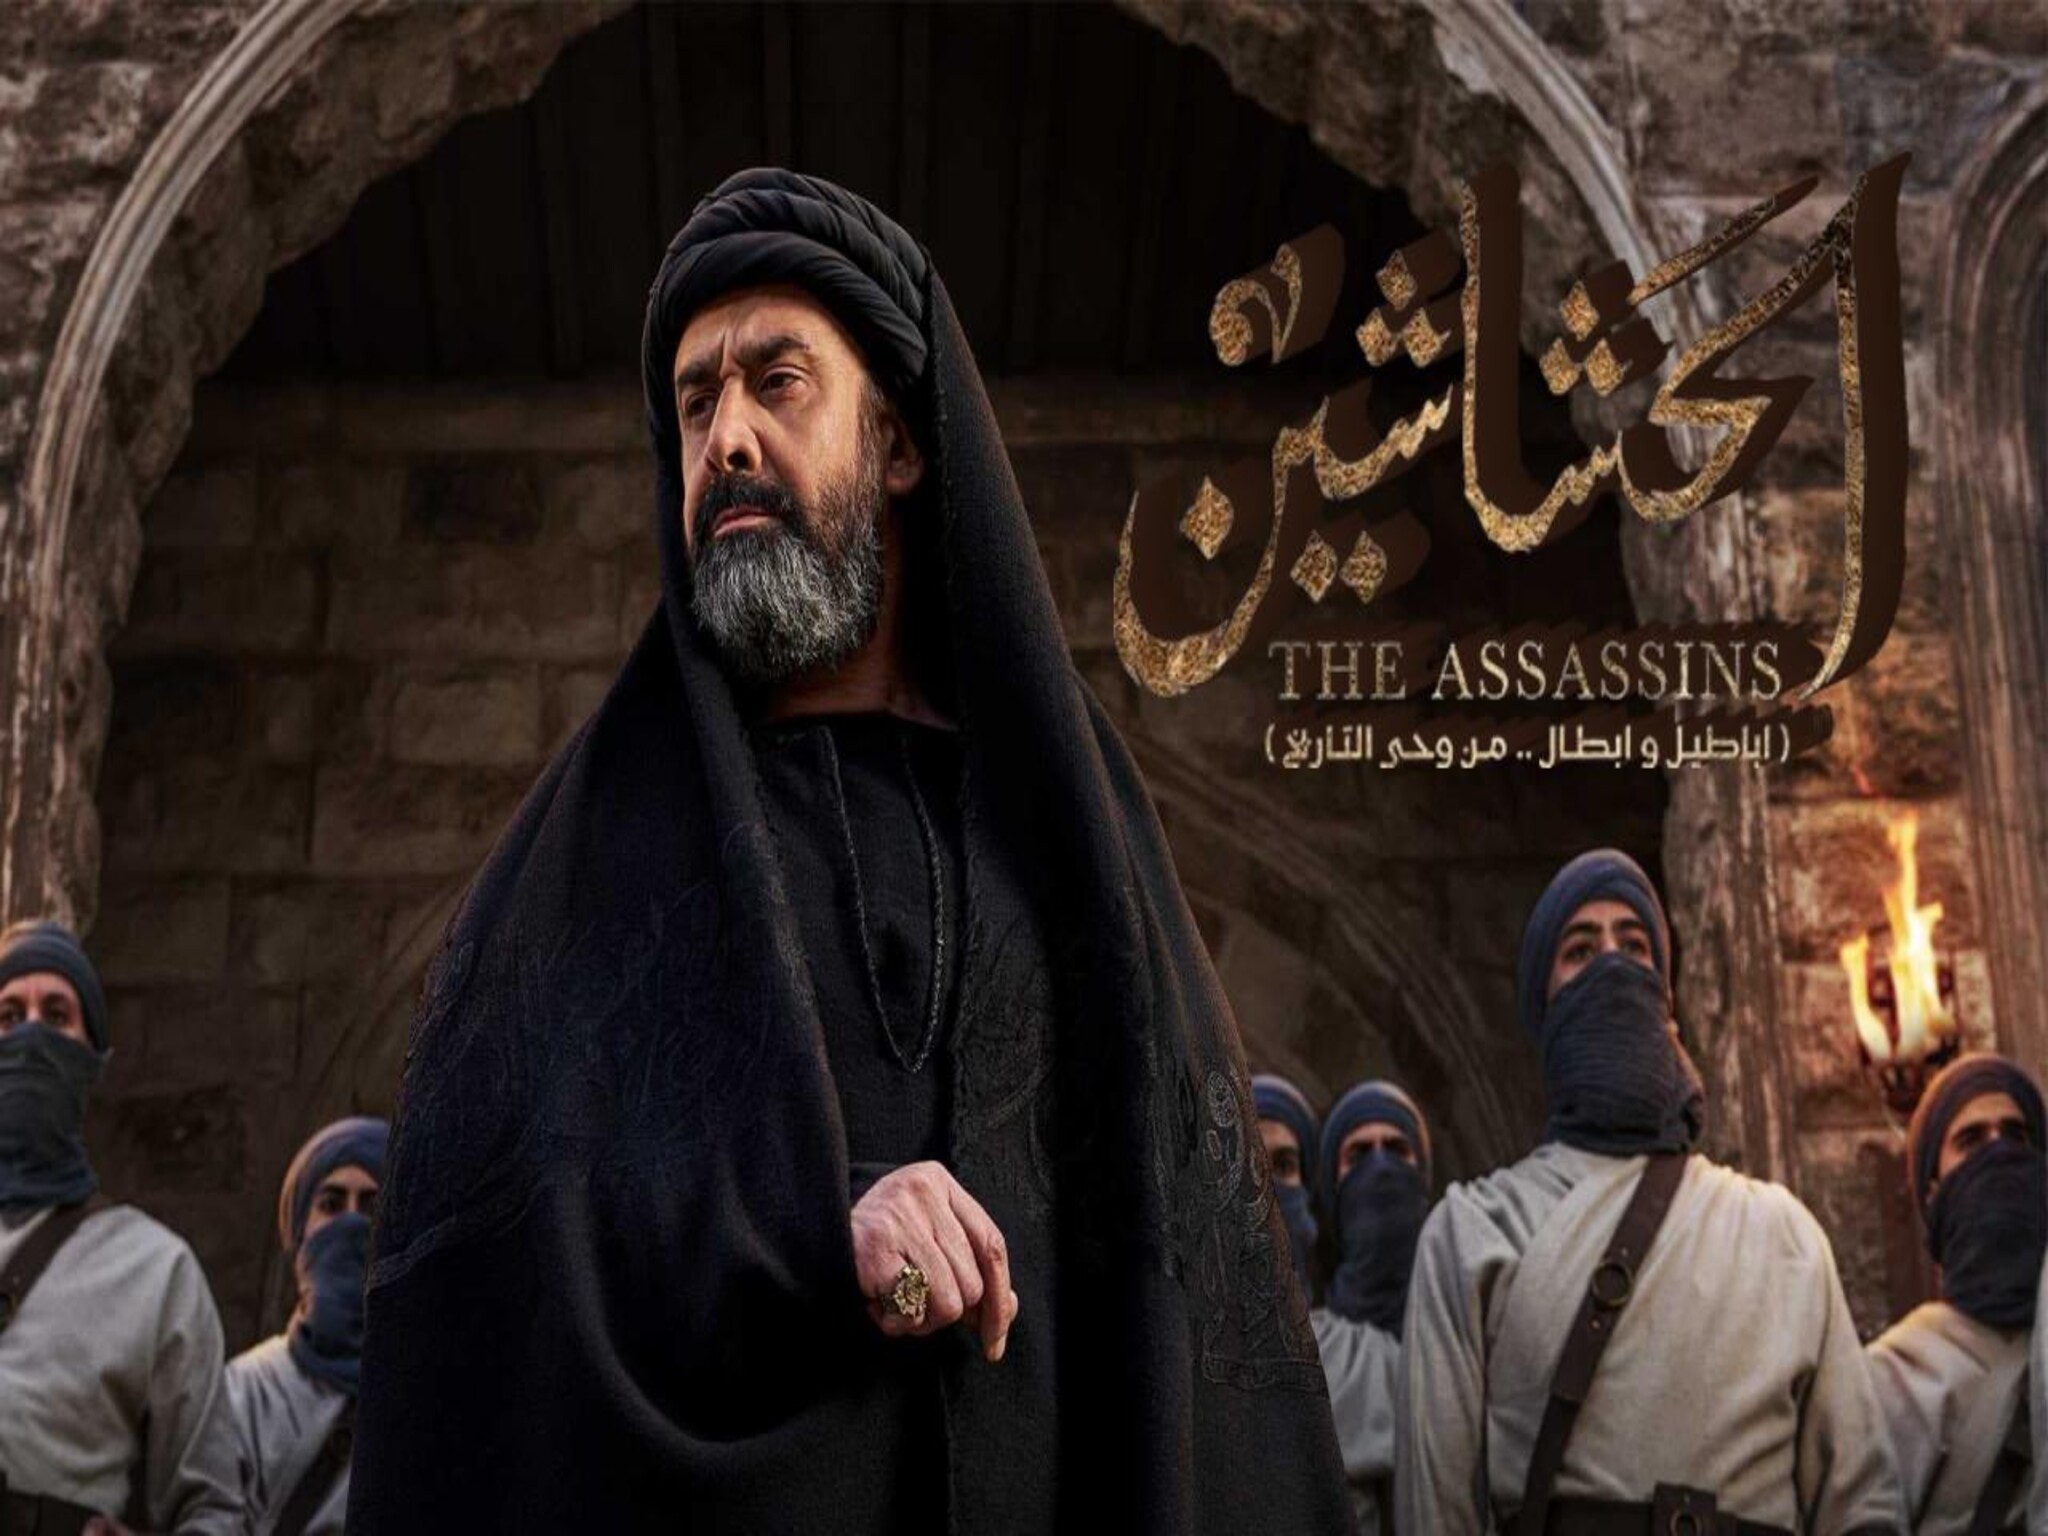 مؤلف "الحشاشين" يرد بطريقته الخاصة على منع عرض المسلسل في دولة إيران